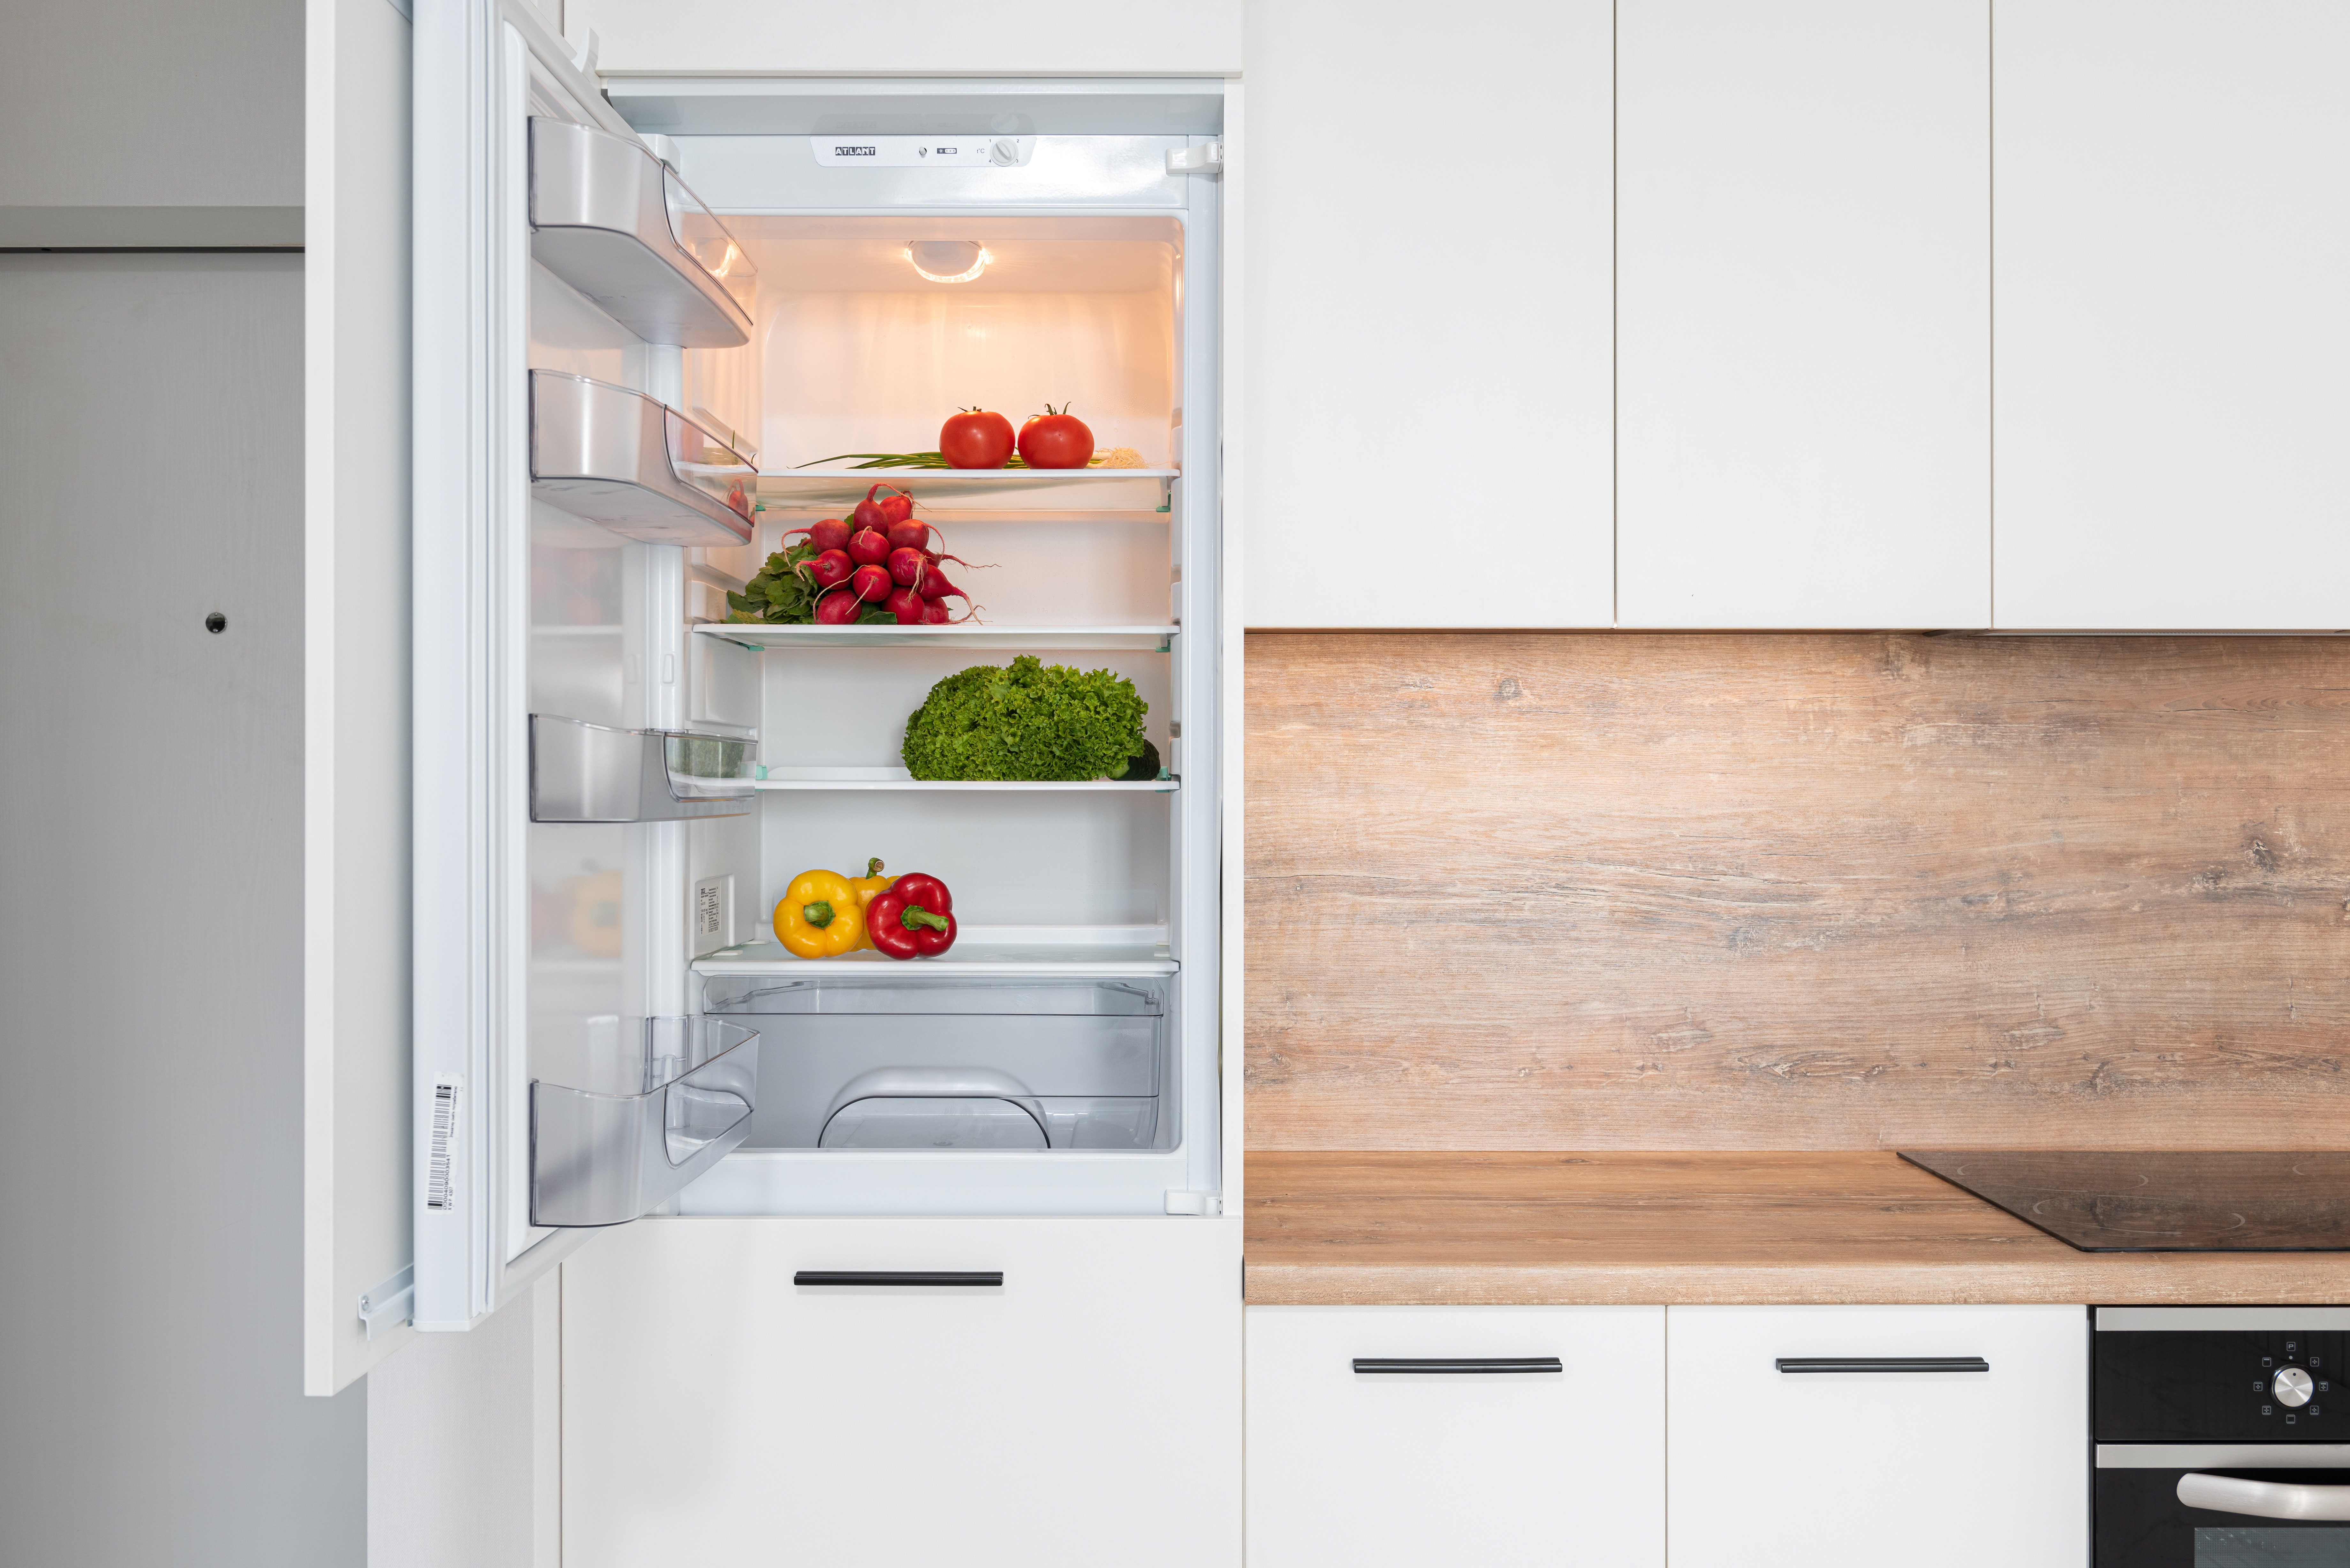 Refrigerator with open door